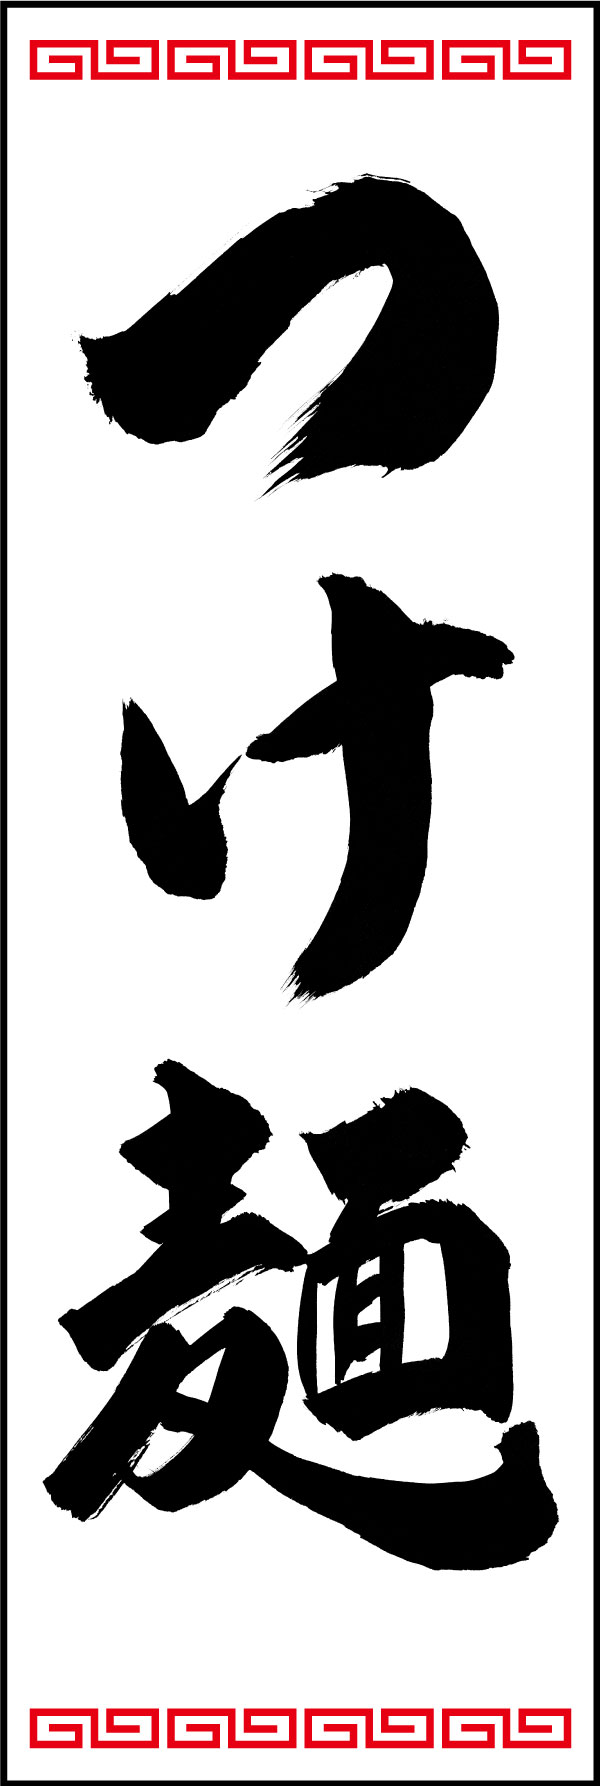 つけ麺 139_06 「つけ麺」ののぼりです。江戸文字職人 加藤木大介氏による、手書きの筆文字です。完全書き下ろし、唯一無二ののぼりは当店だけのオリジナル商品です。（Y.M）